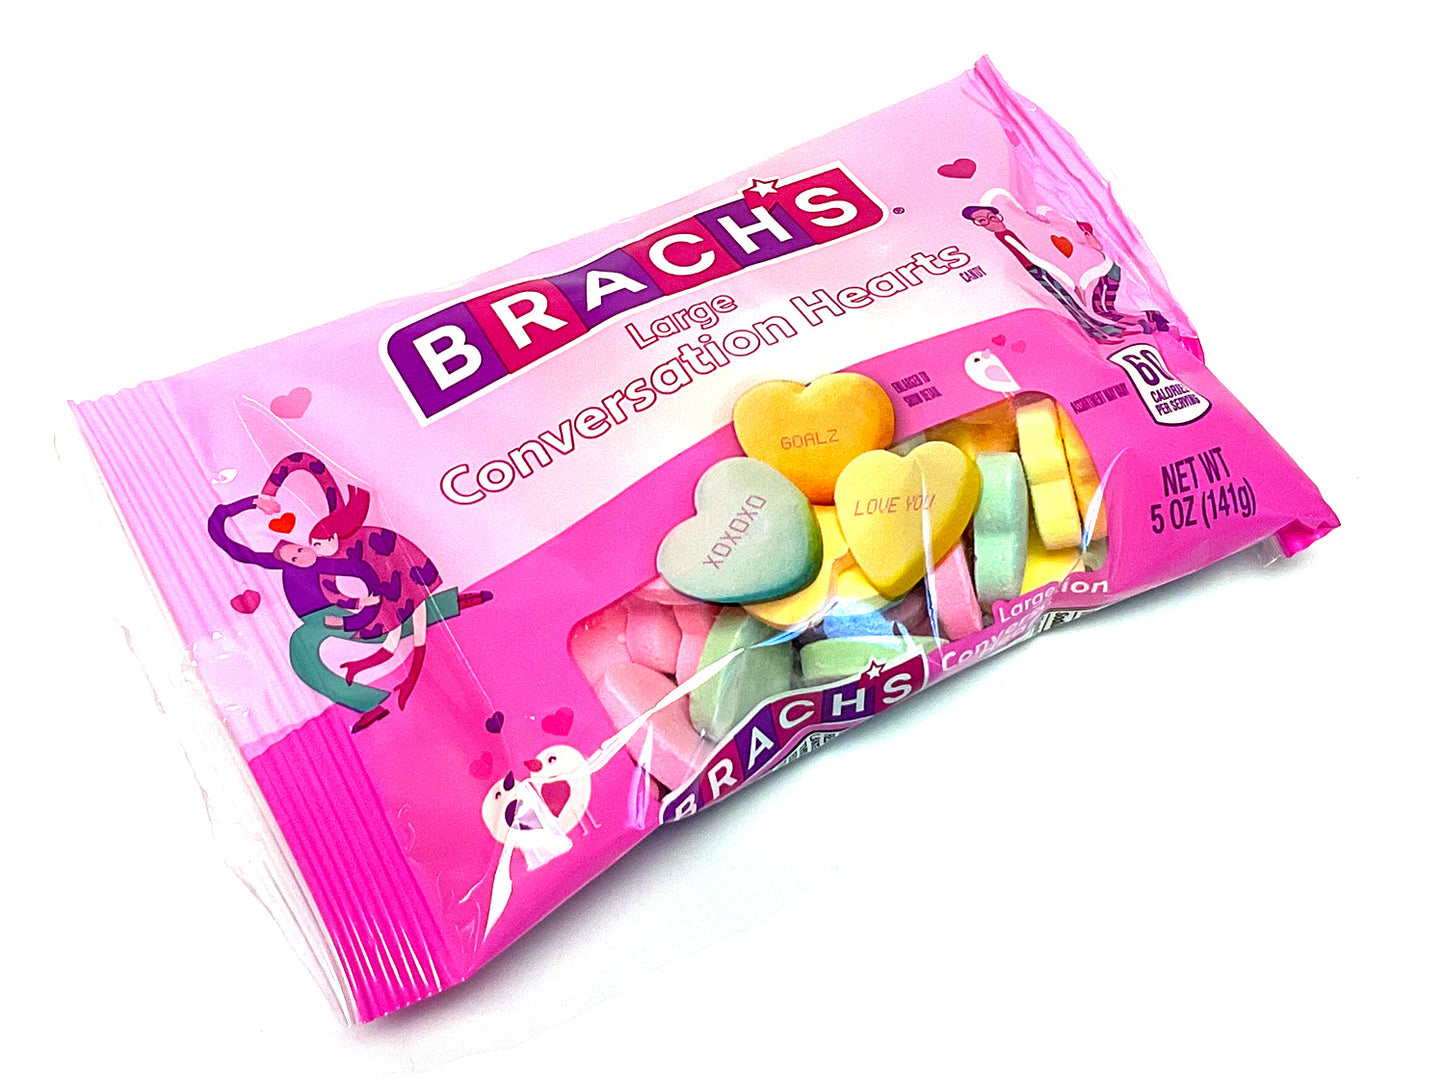 Brach's Large Conversation Hearts - 5 oz bag